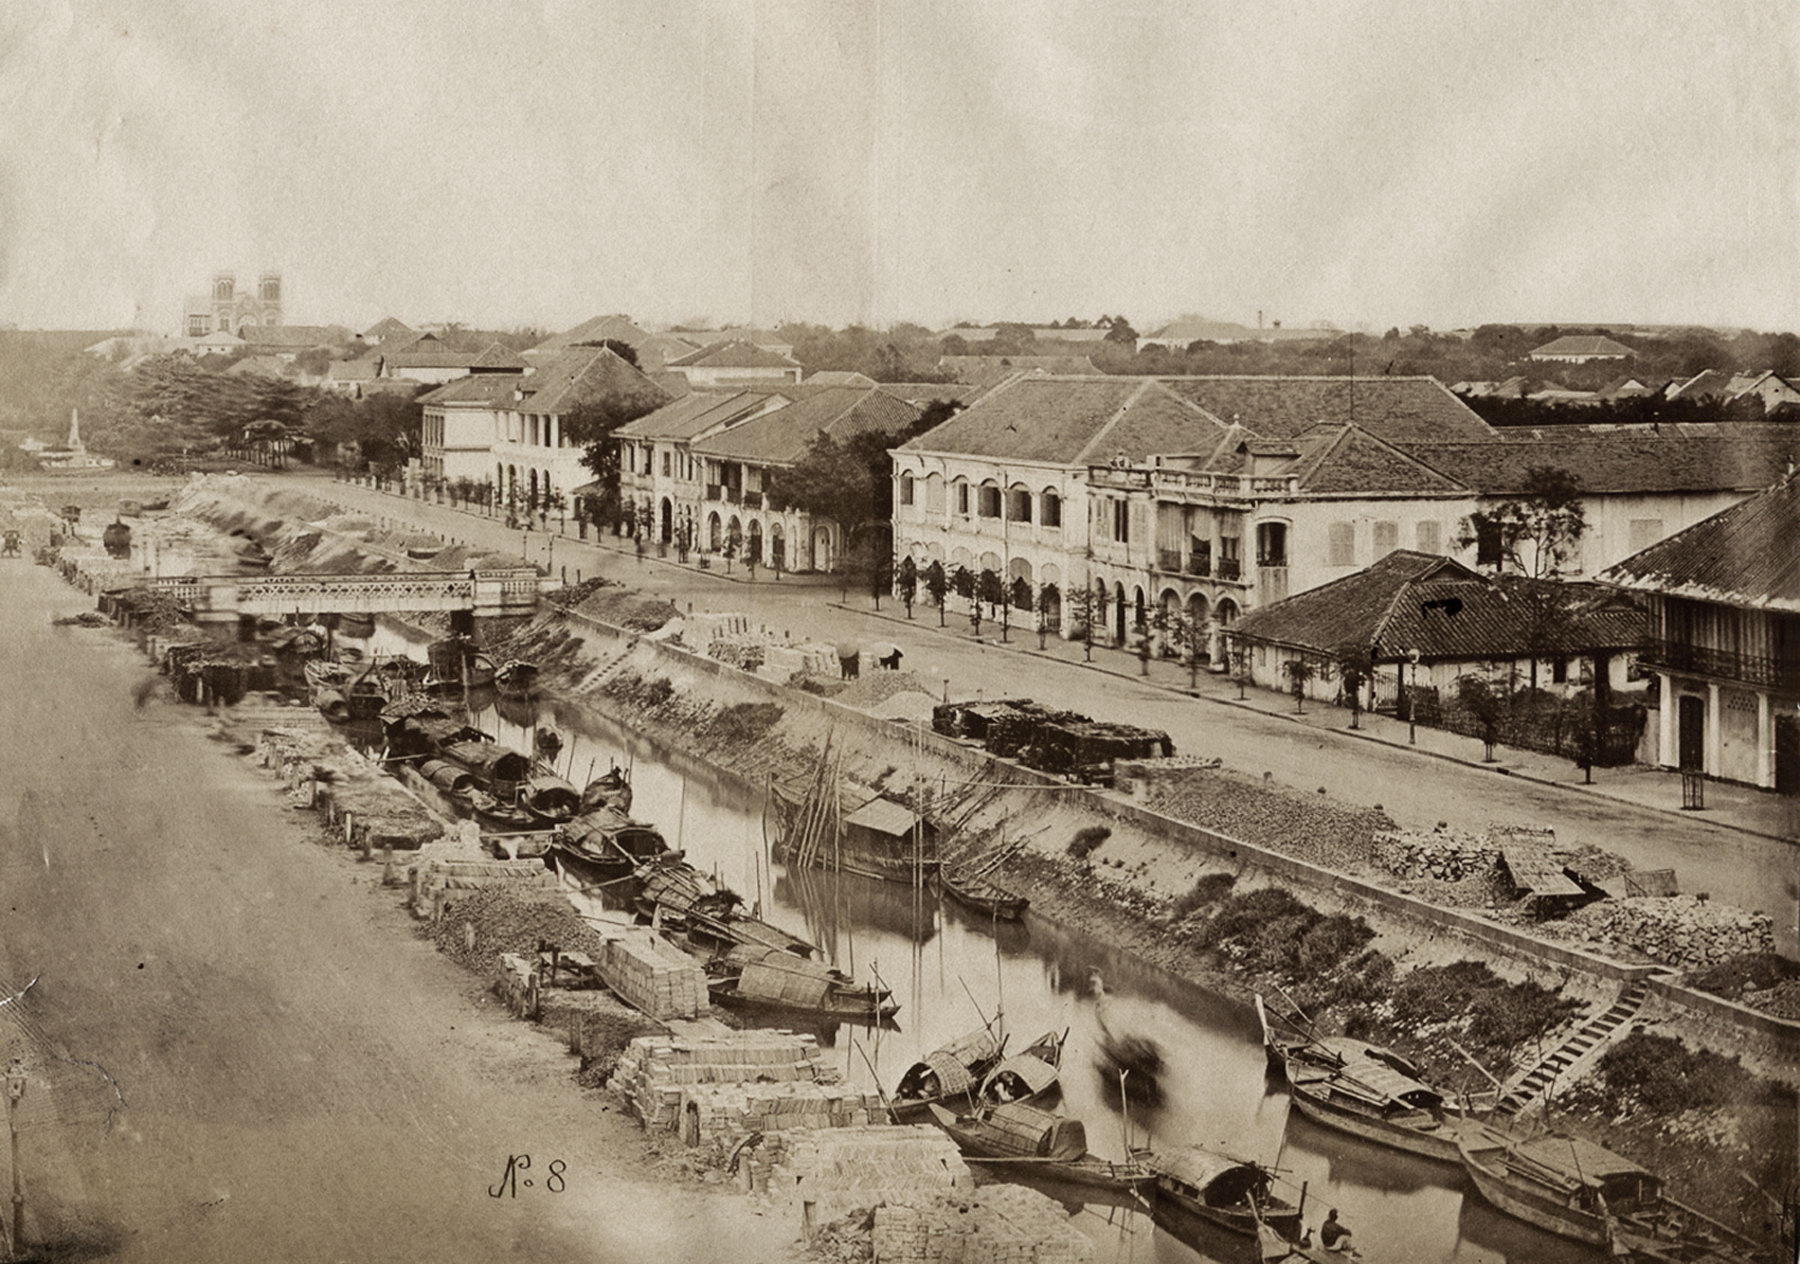 Sài Gòn – Chợ Lớn thế kỷ 19 qua ống kính Emile Gsell